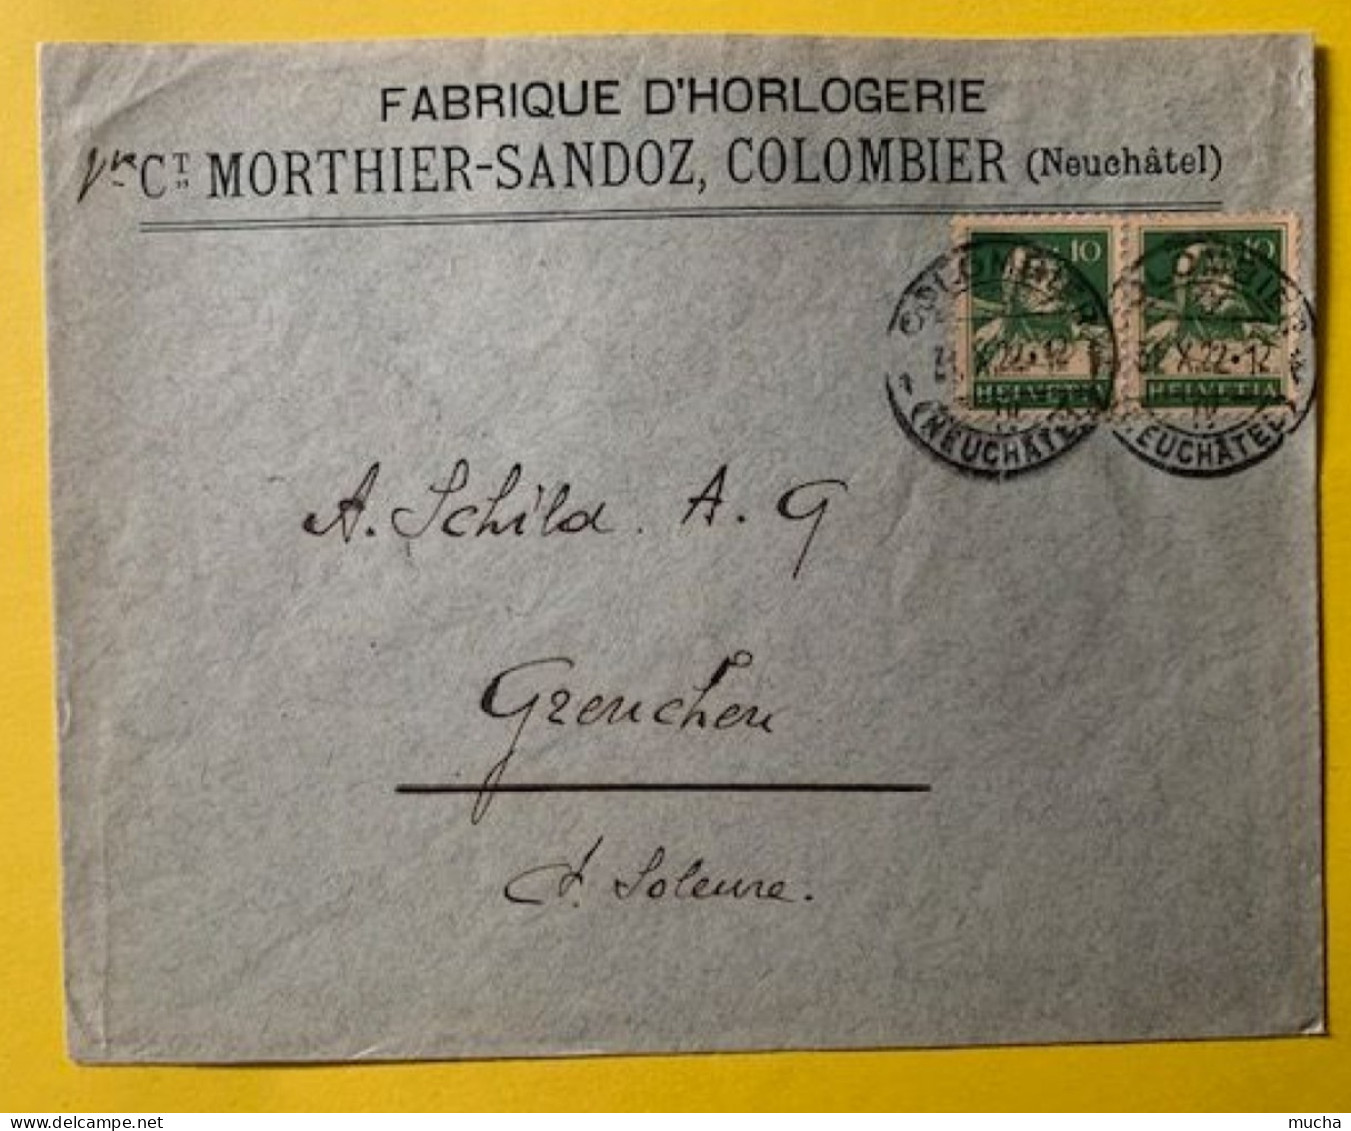 70030 - Suisse Lettre Fabrique D'Horlogerie Vve Morthier-Sandoz Colombier 31.10.1922 - Horlogerie